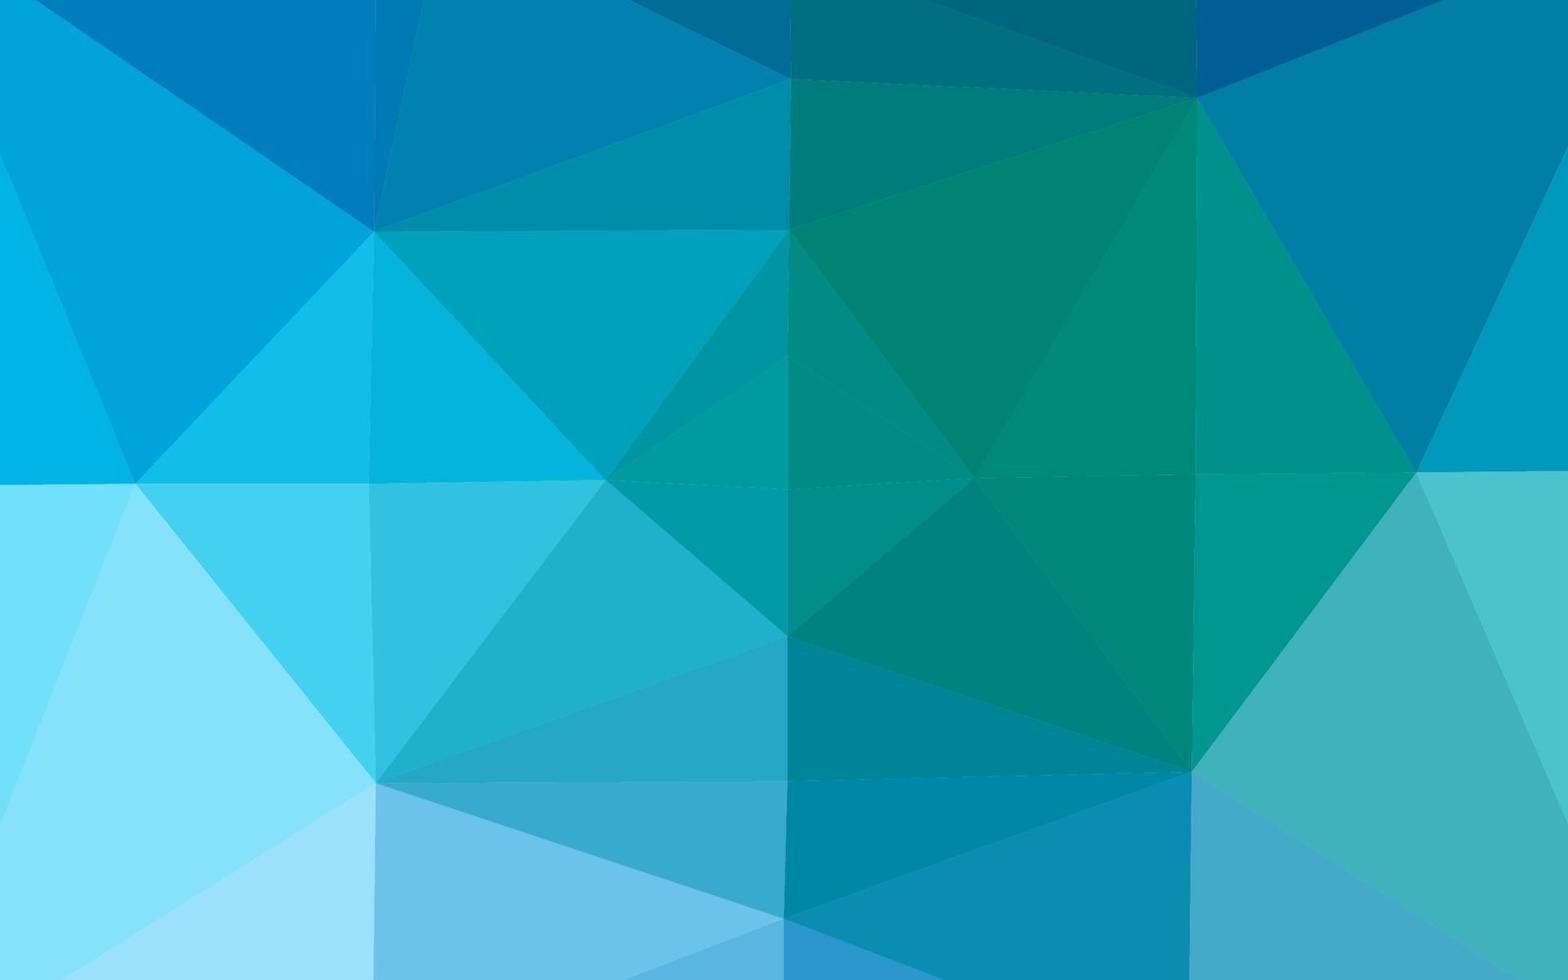 diseño abstracto del polígono del vector azul claro, verde.